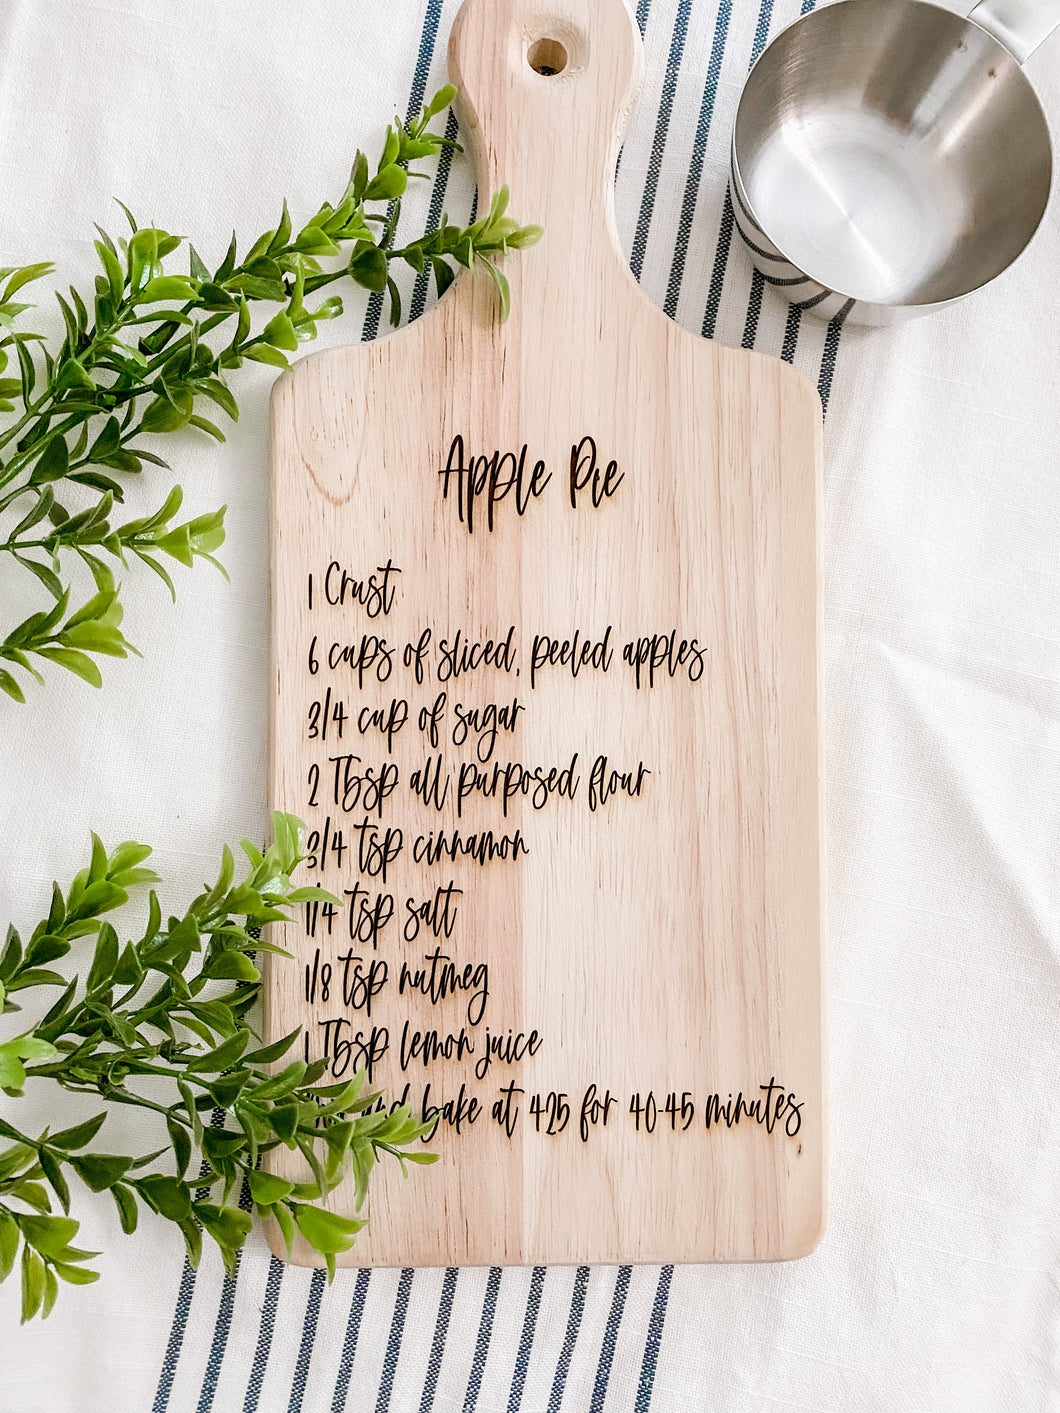 apple pie recipe cutting board